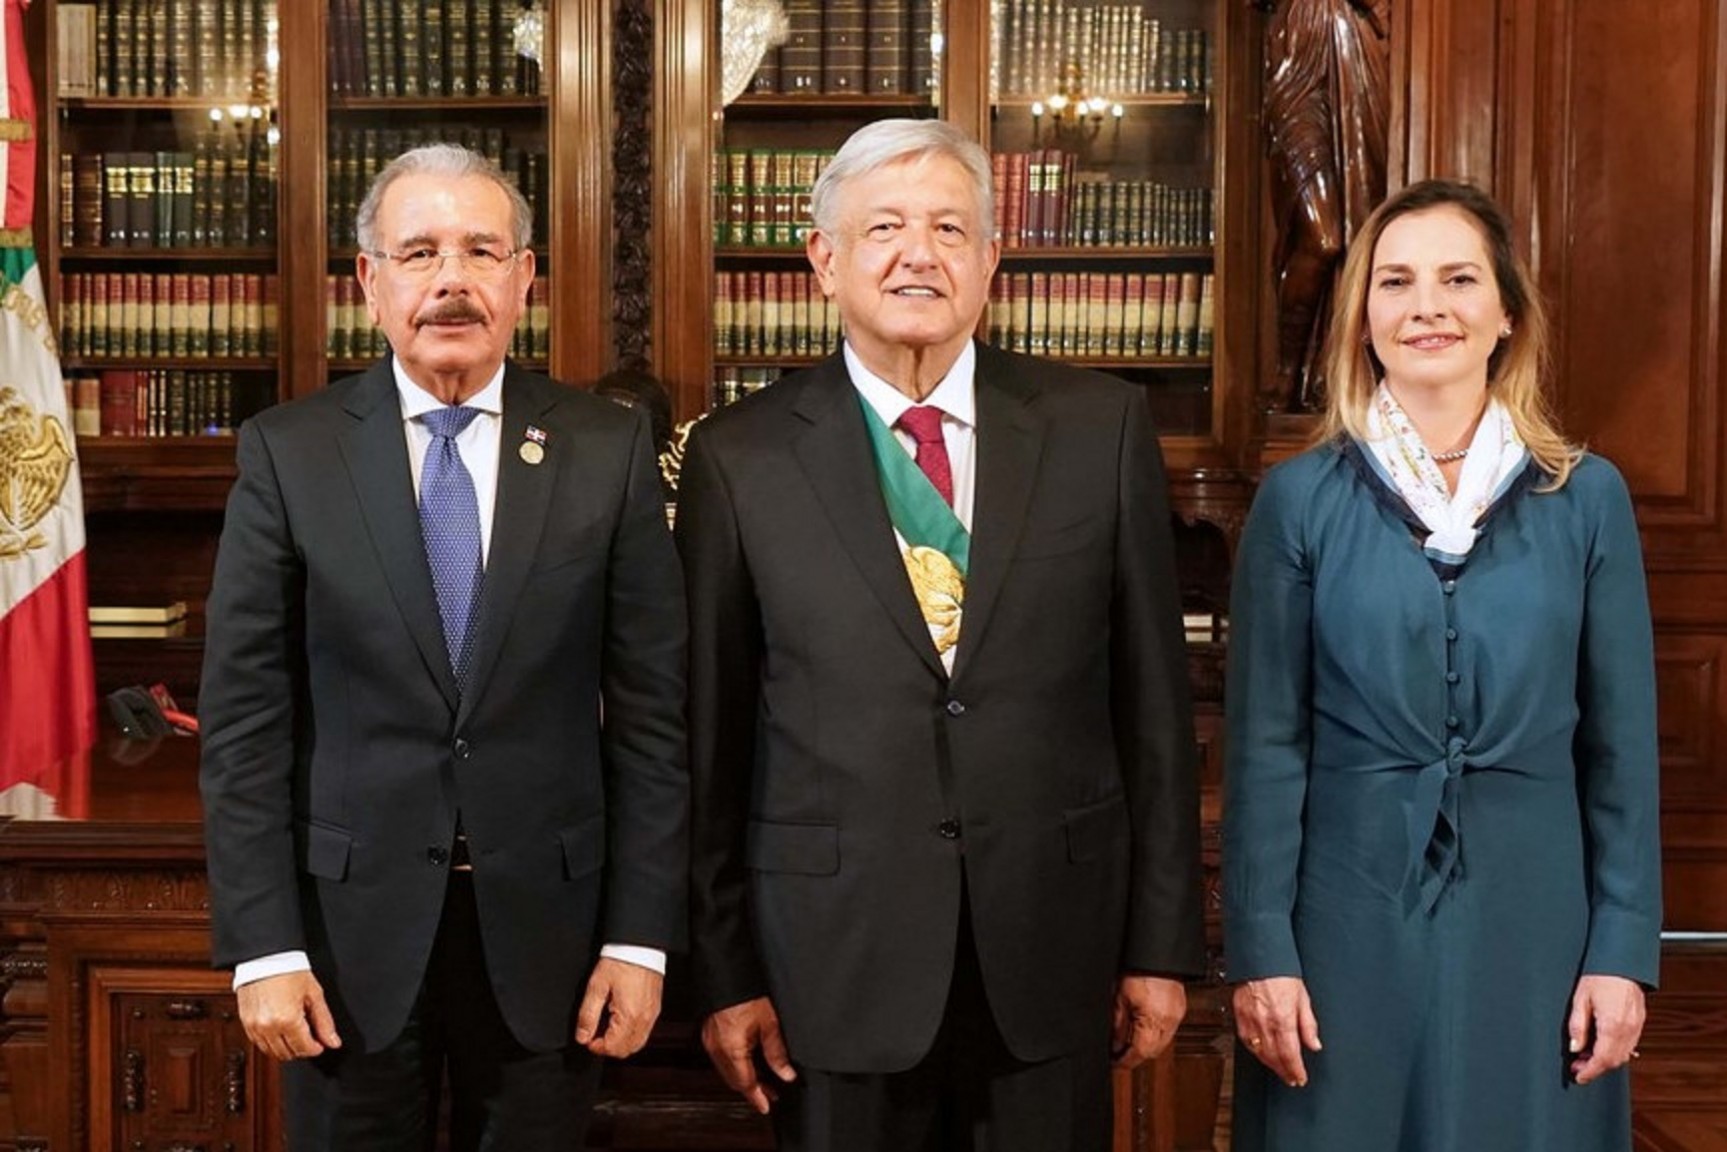 REPÚBLICA DOMINICANA: Danilo Medina confía en fortalecimiento relaciones República Dominicana-México; asiste a toma de posesión Andrés Manuel López Obrador